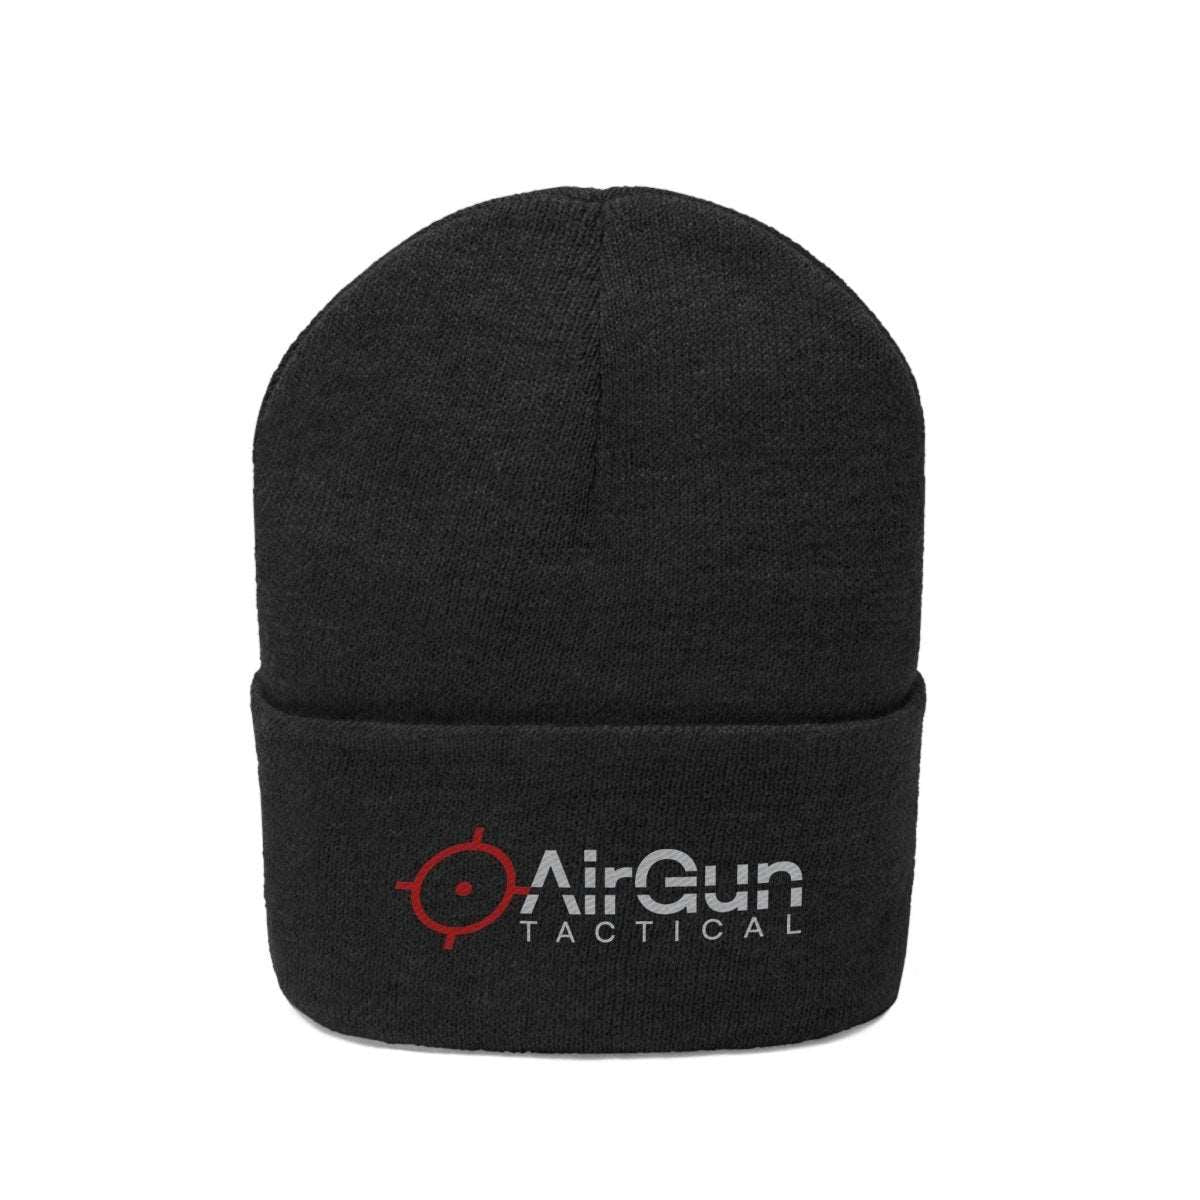 AirGun Tactical Knit Beanie - AirGun Tactical